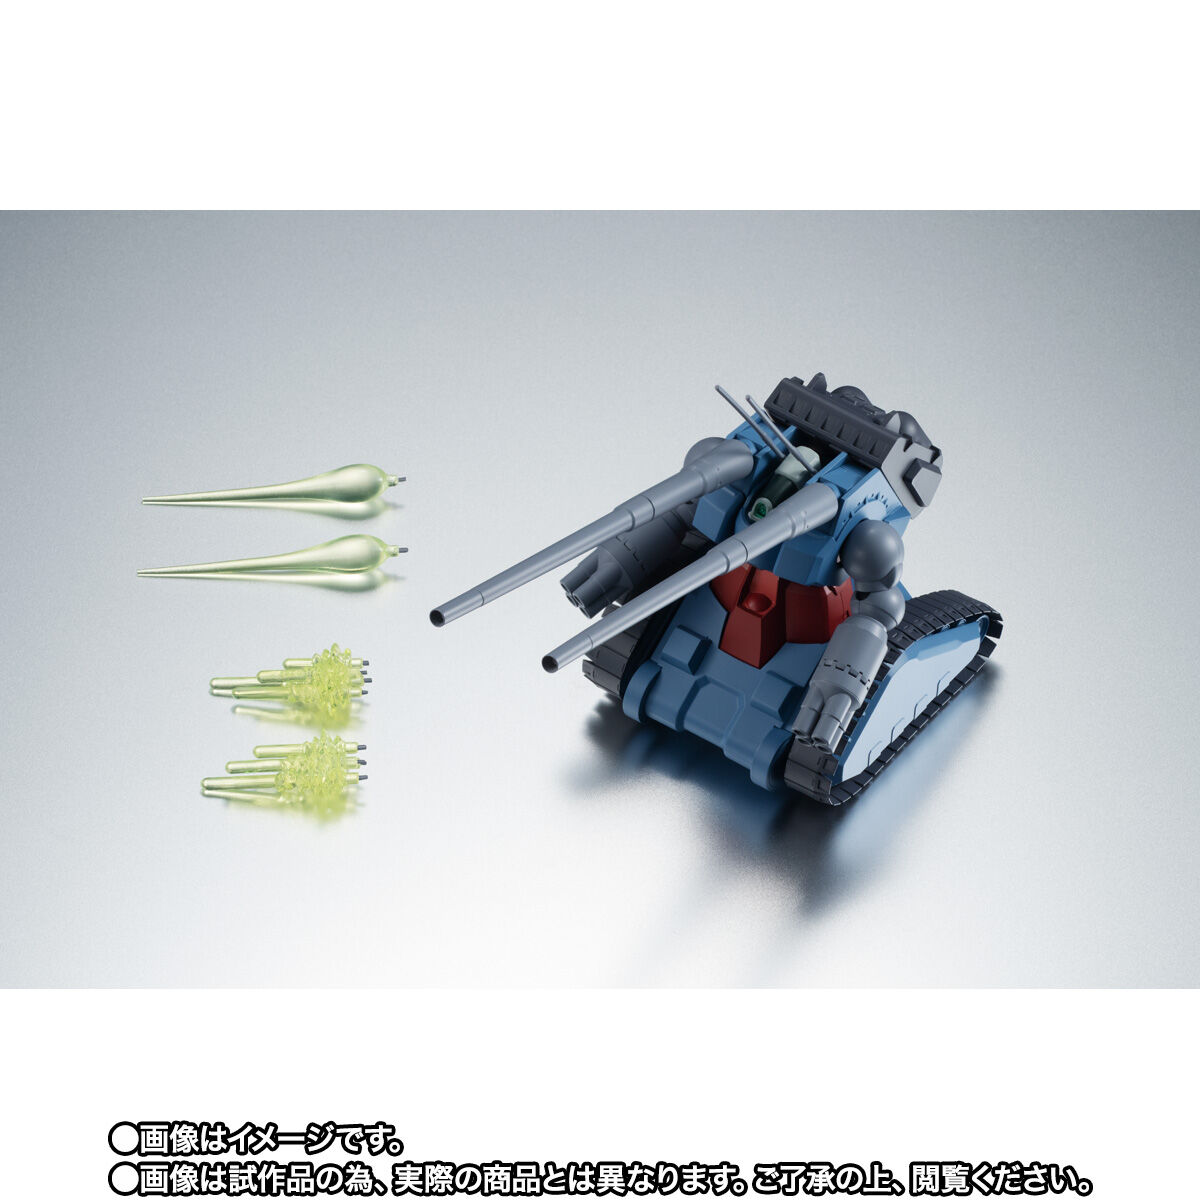 【限定販売】ROBOT魂〈SIDE MS〉『RX-75 量産型ガンタンク ver. A.N.I.M.E.』機動戦士ガンダム 第08MS小隊 可動フィギュア-010